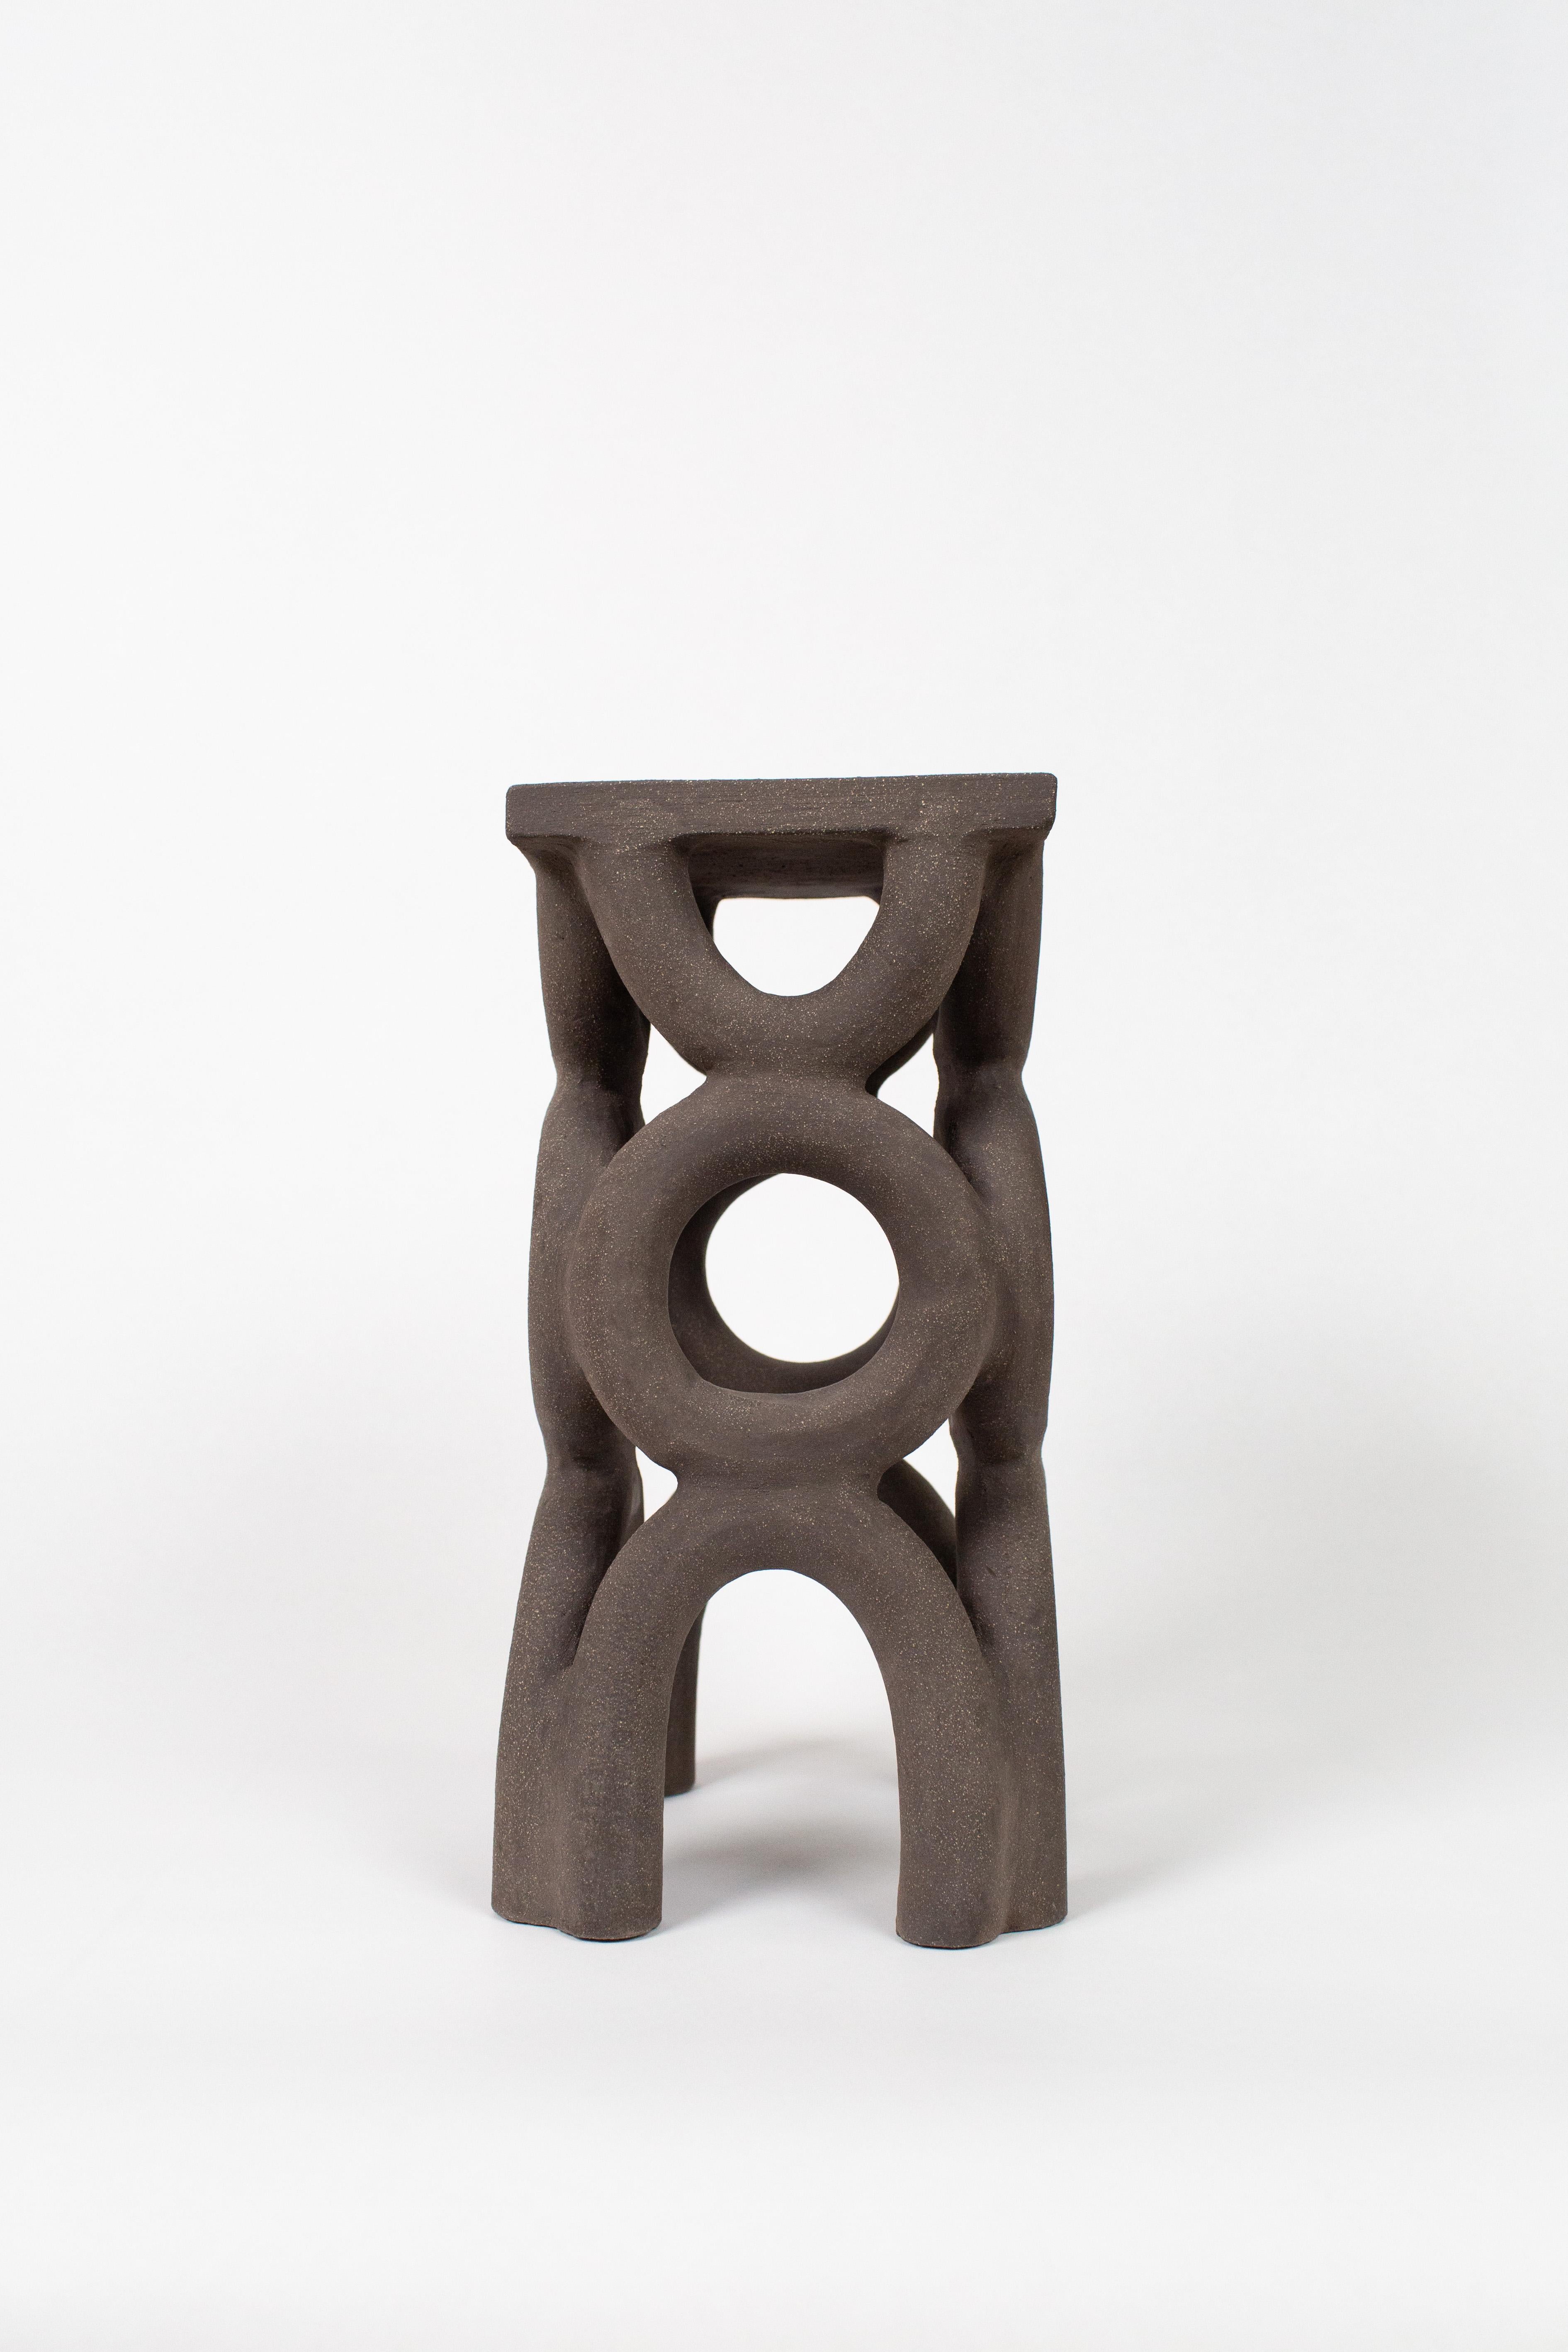 Unique arch square dark stool by Mesut Öztürk.
Dimensions:  W 19 x D 19 x  H 40 cm.
Materials: stoneware.

